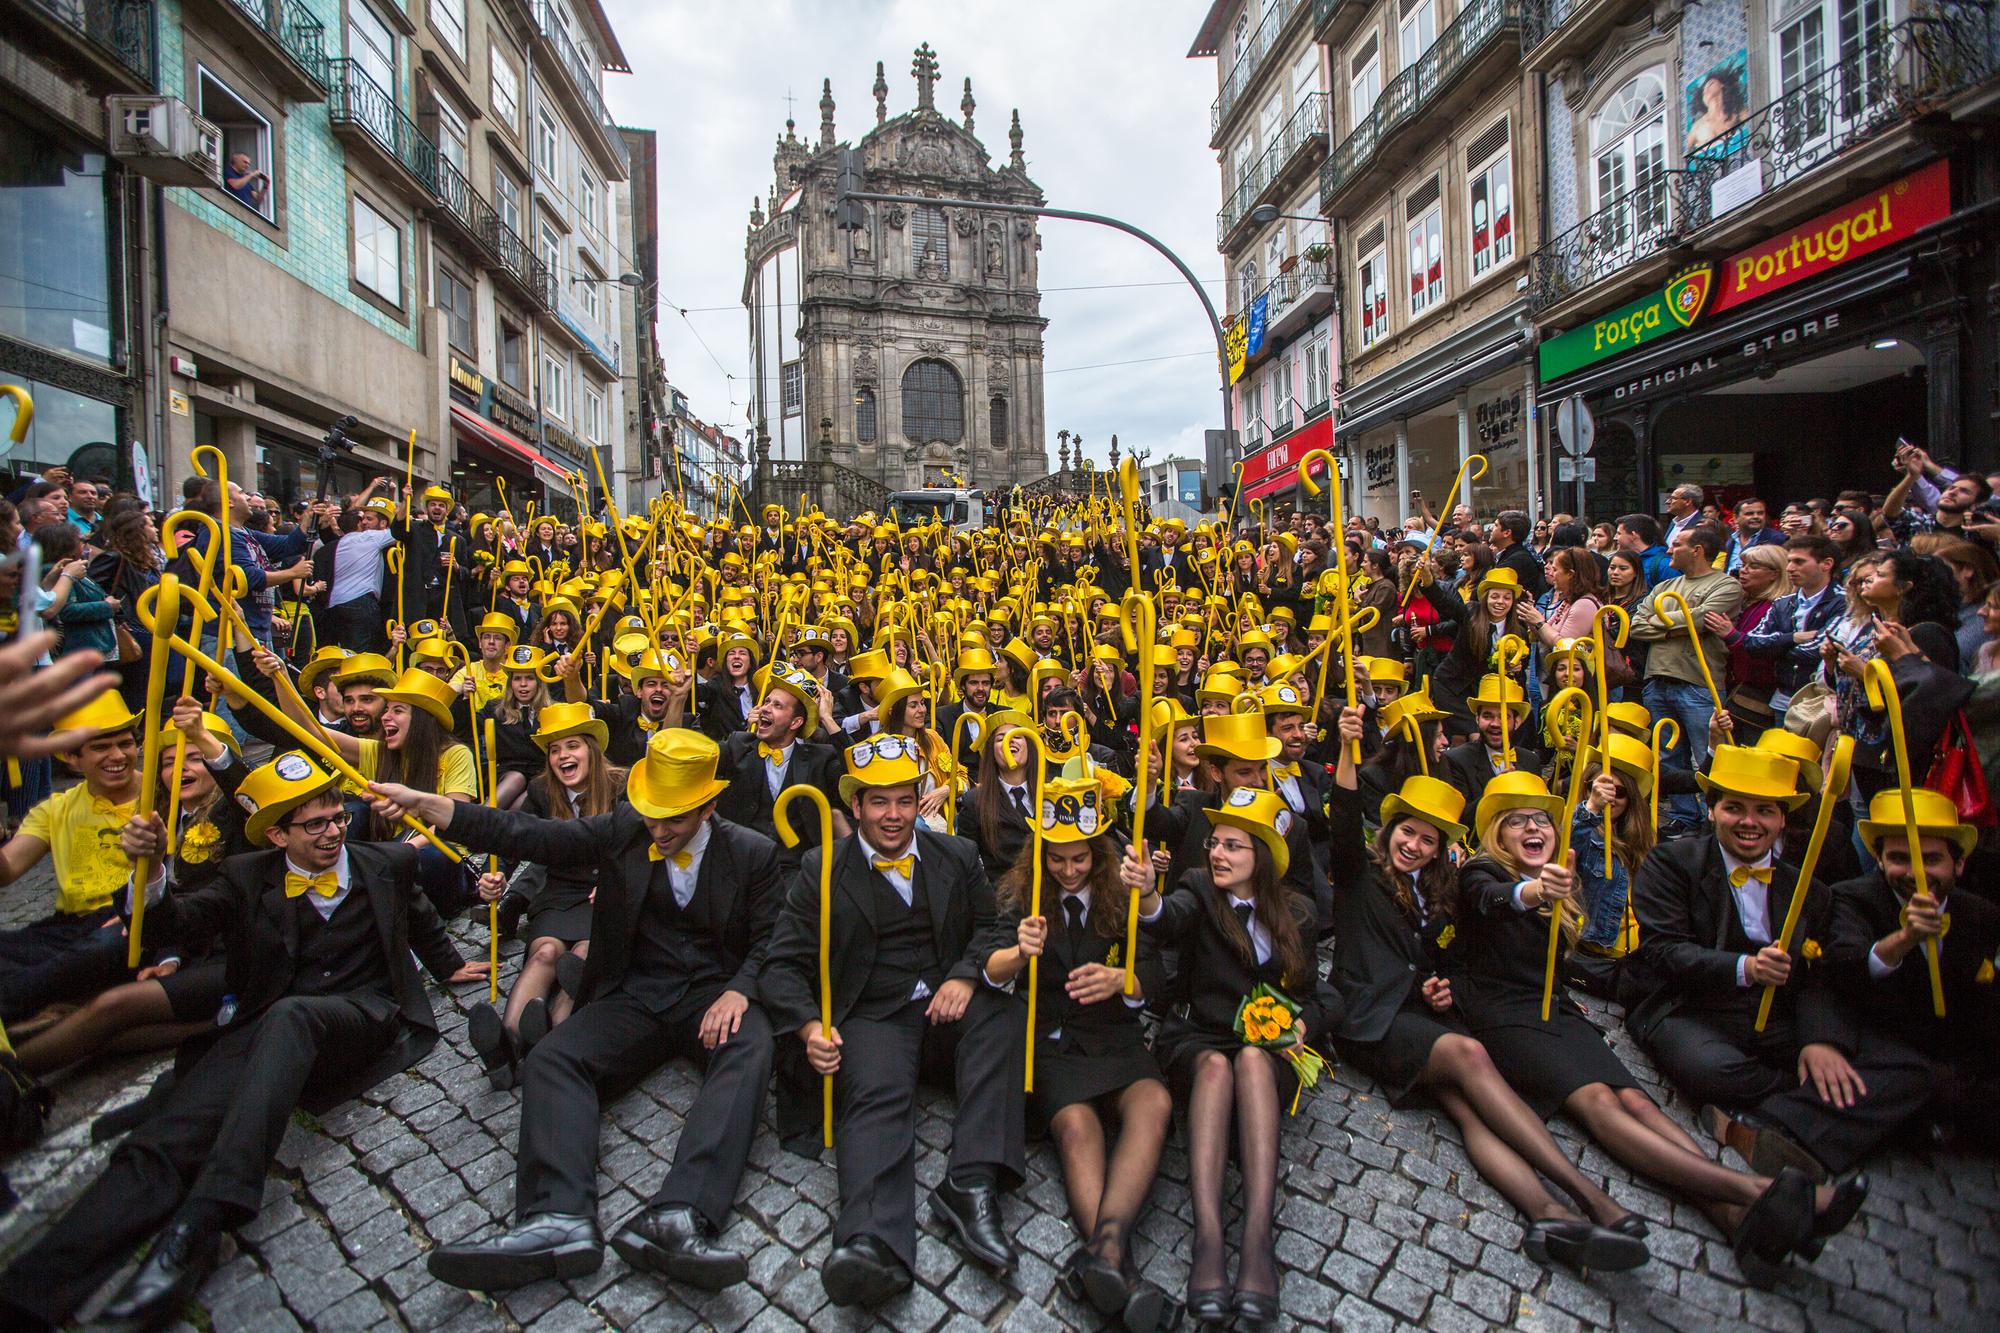 Étudiants dans les rues de Porto pour la Queima das fitas